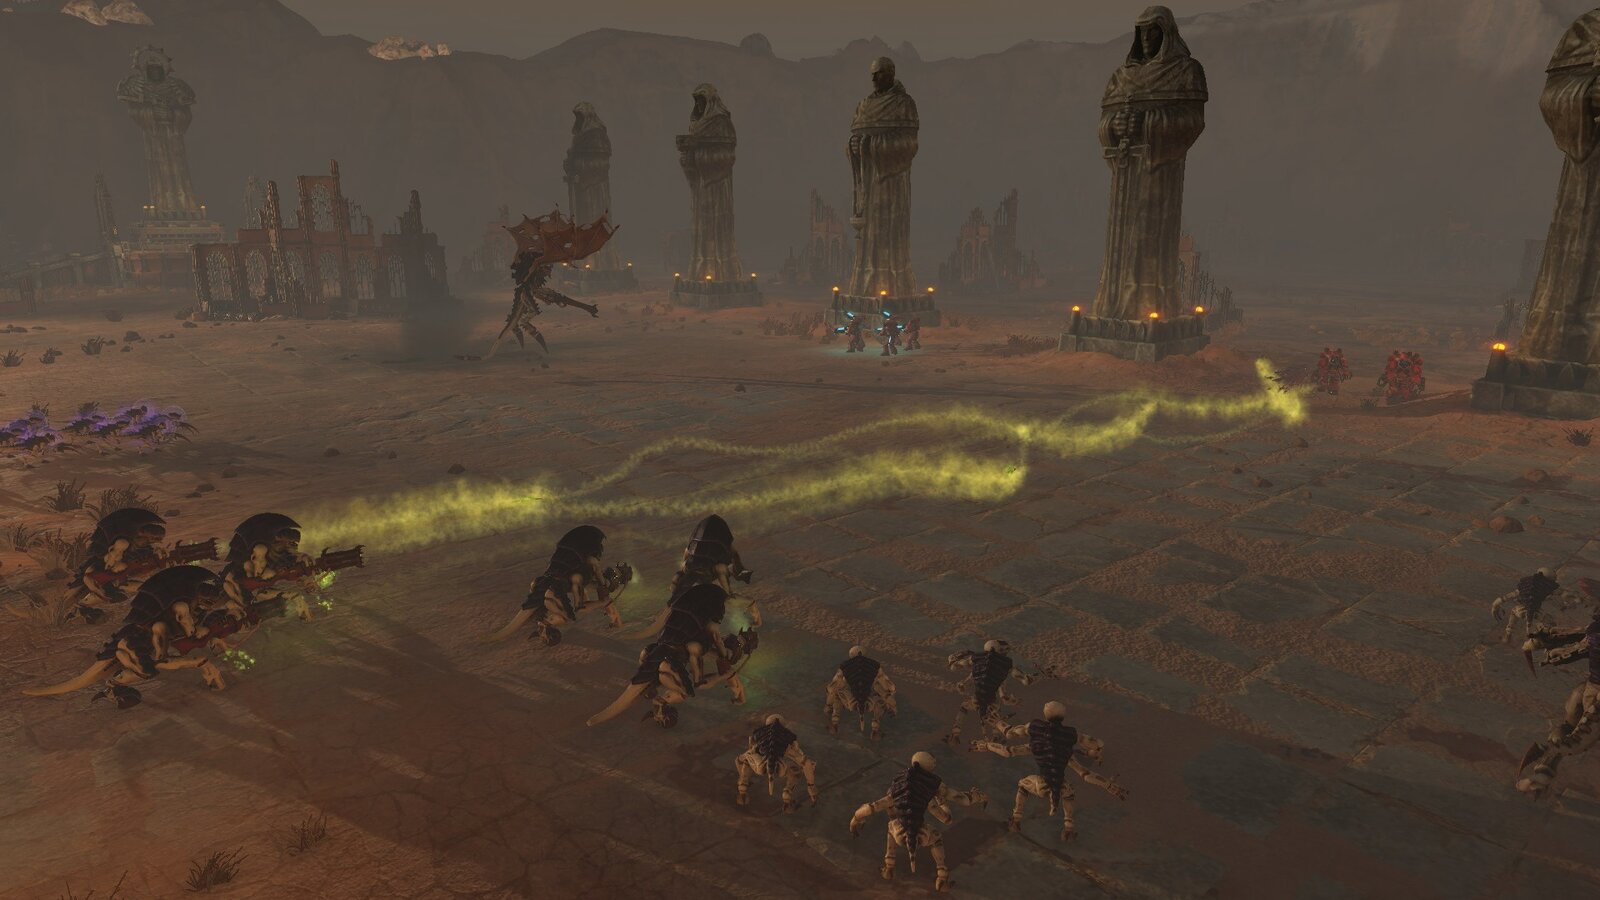 Warhammer 40,000: Battlesector - Tyranid Elites